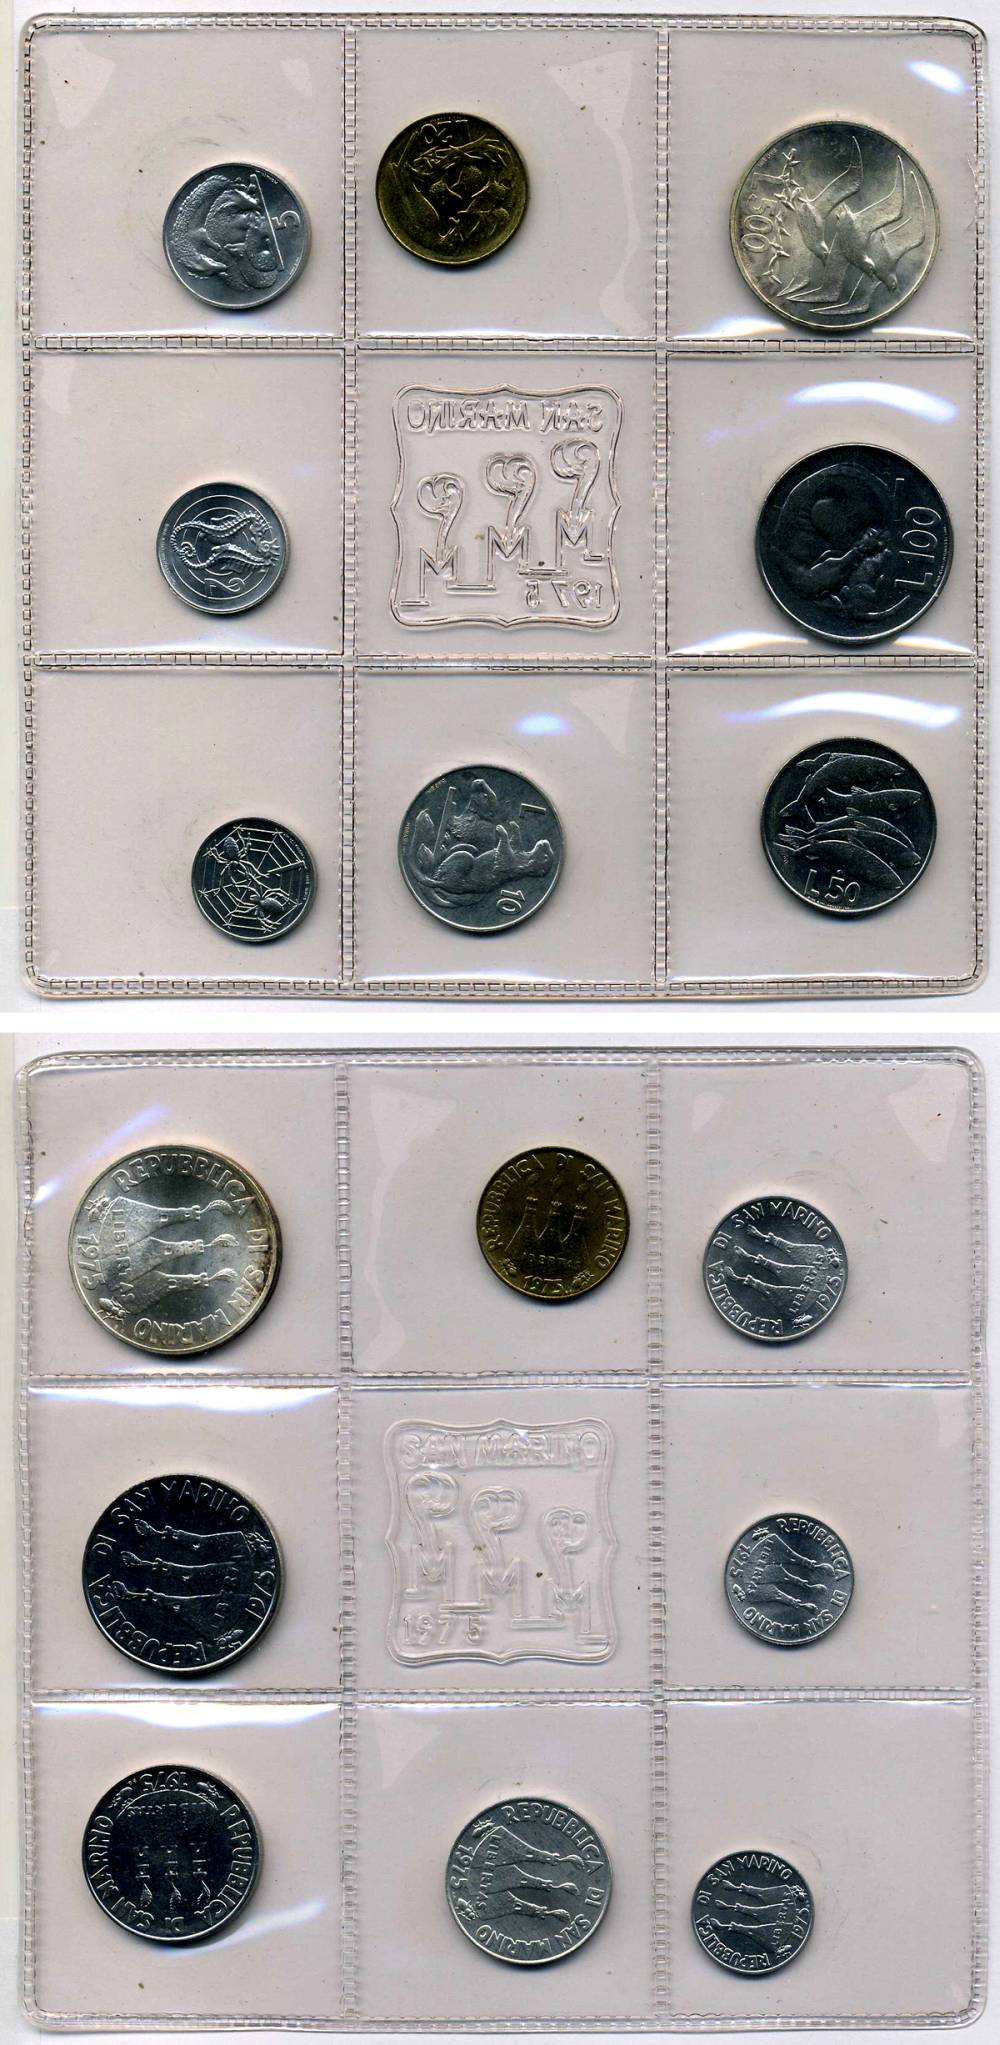 Сан-Марино набор монет 1999. Запайка монет. Набор евро монет Сан Марино 2007. Годовой набор монет Сан Марино 1973 год. 8 монет в операции